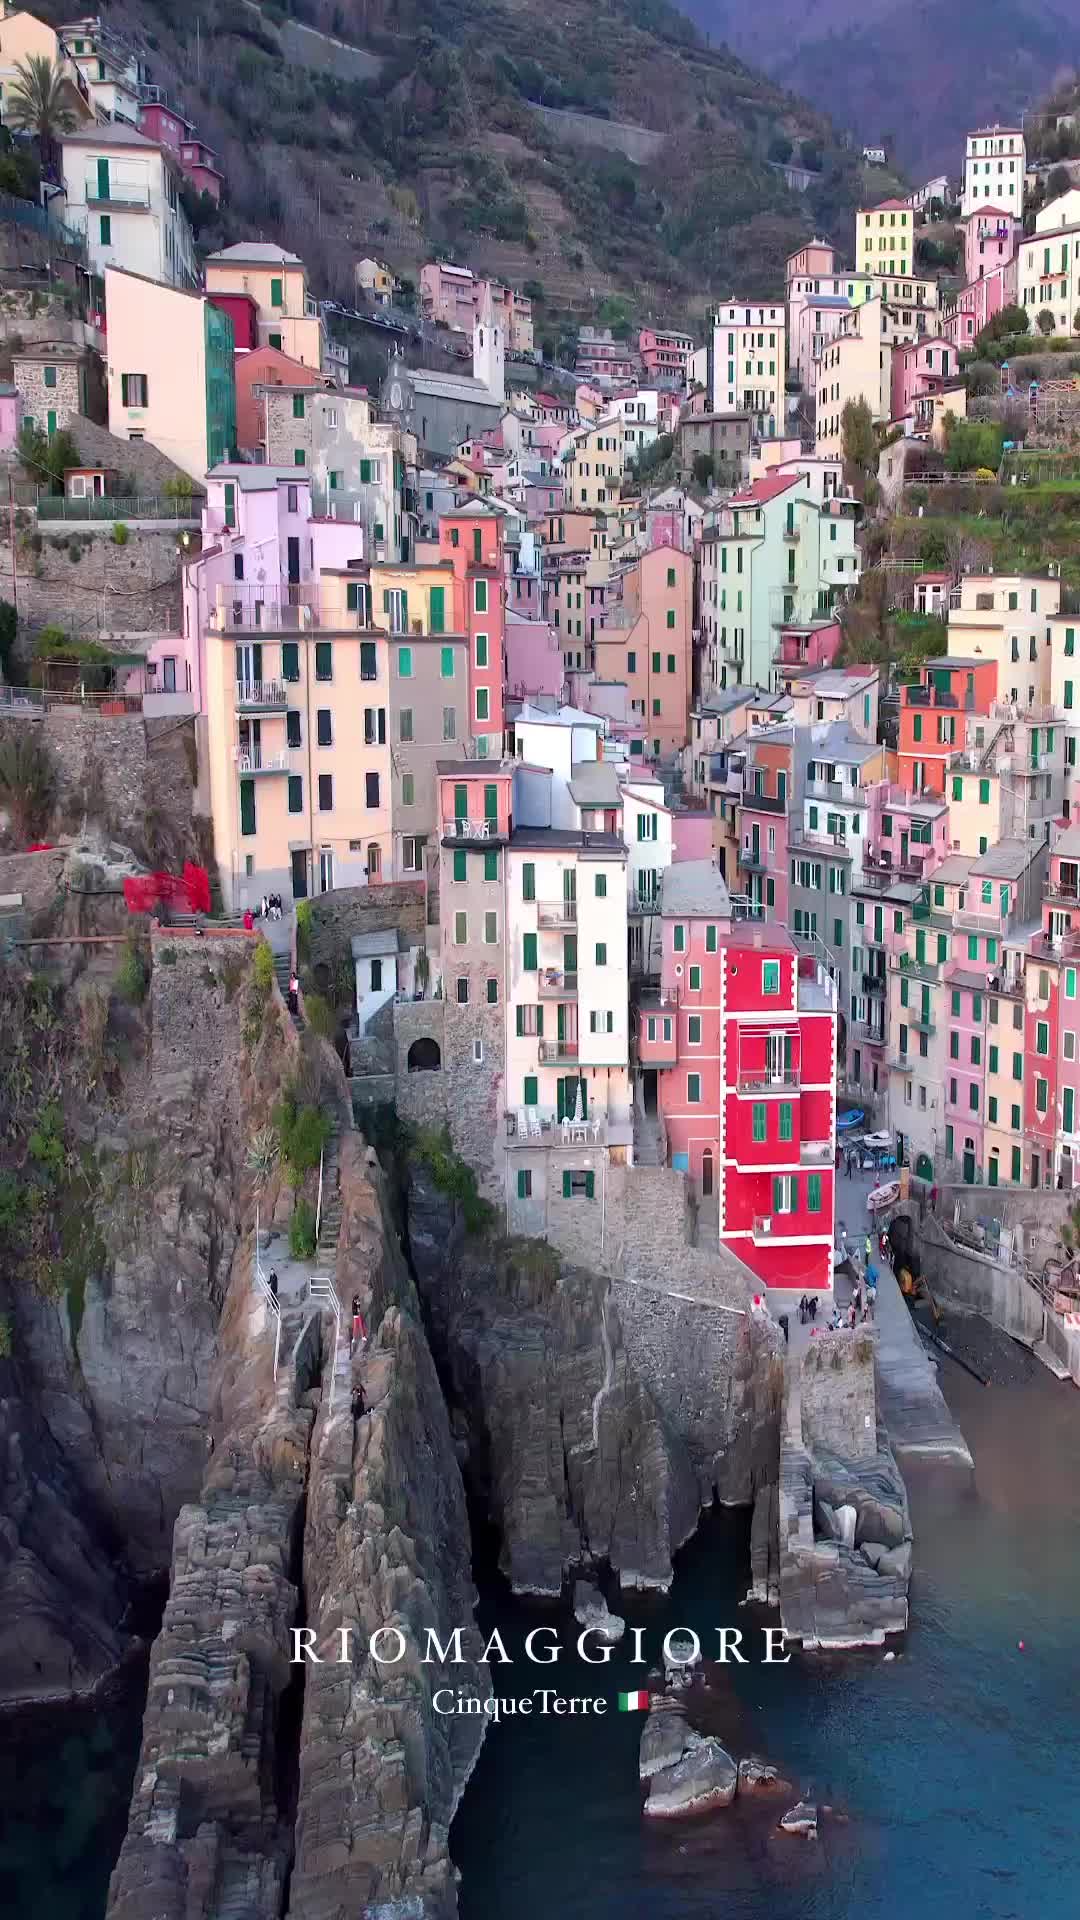 Discover Riomaggiore: Gem of Cinque Terre, Italy